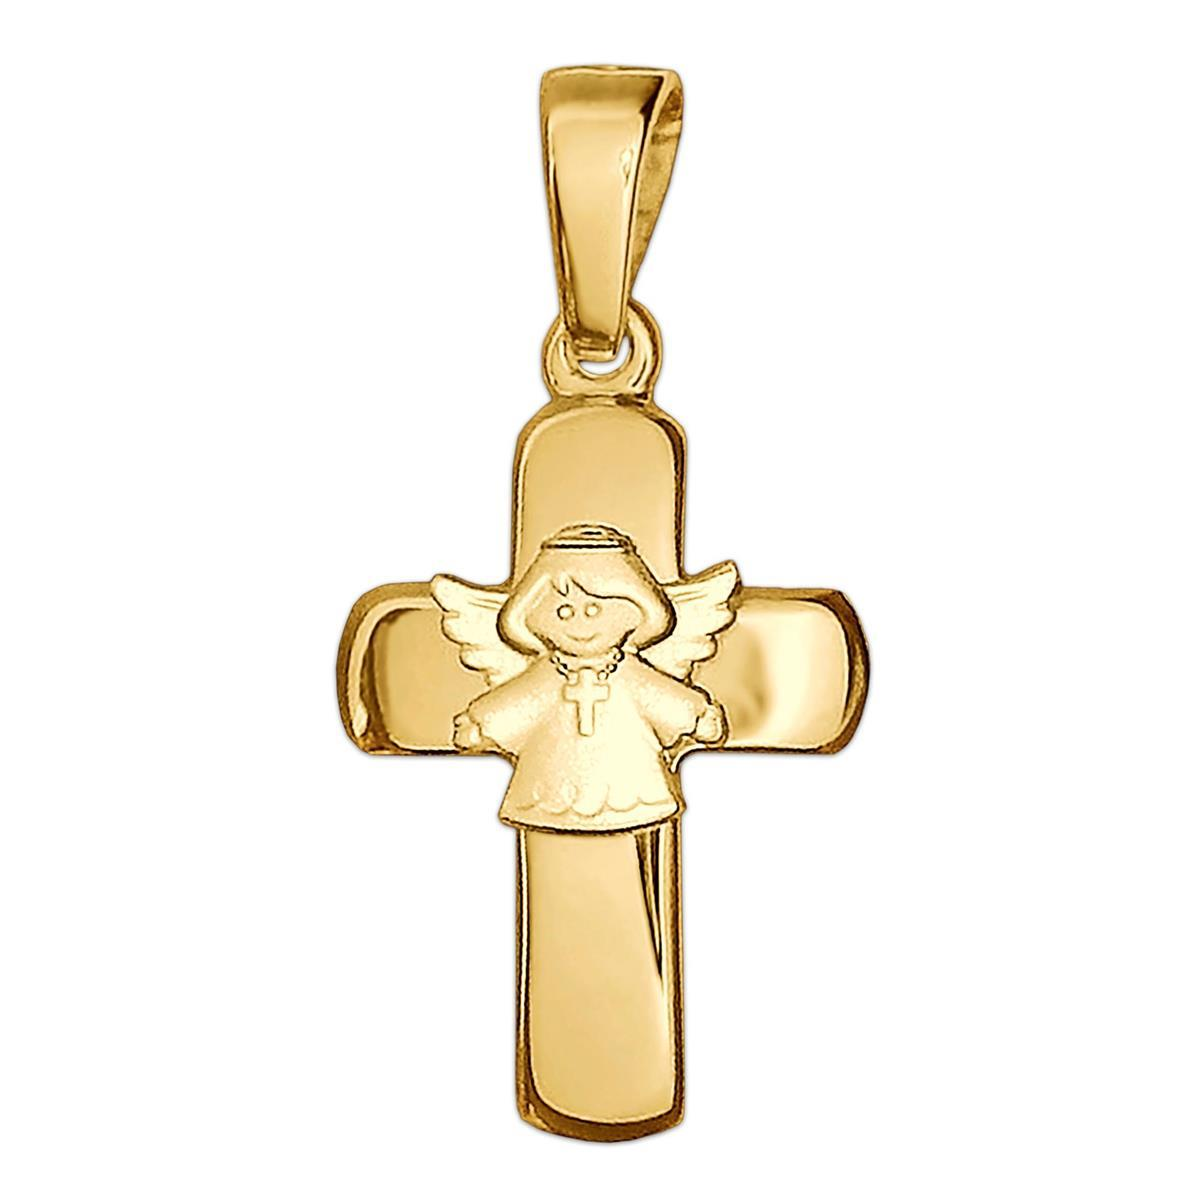 Goldener Anhänger Kreuz 15 mm glänzend mit aufgesetztem Kinderengel seidenmatt 333 GOLD 8 KARAT